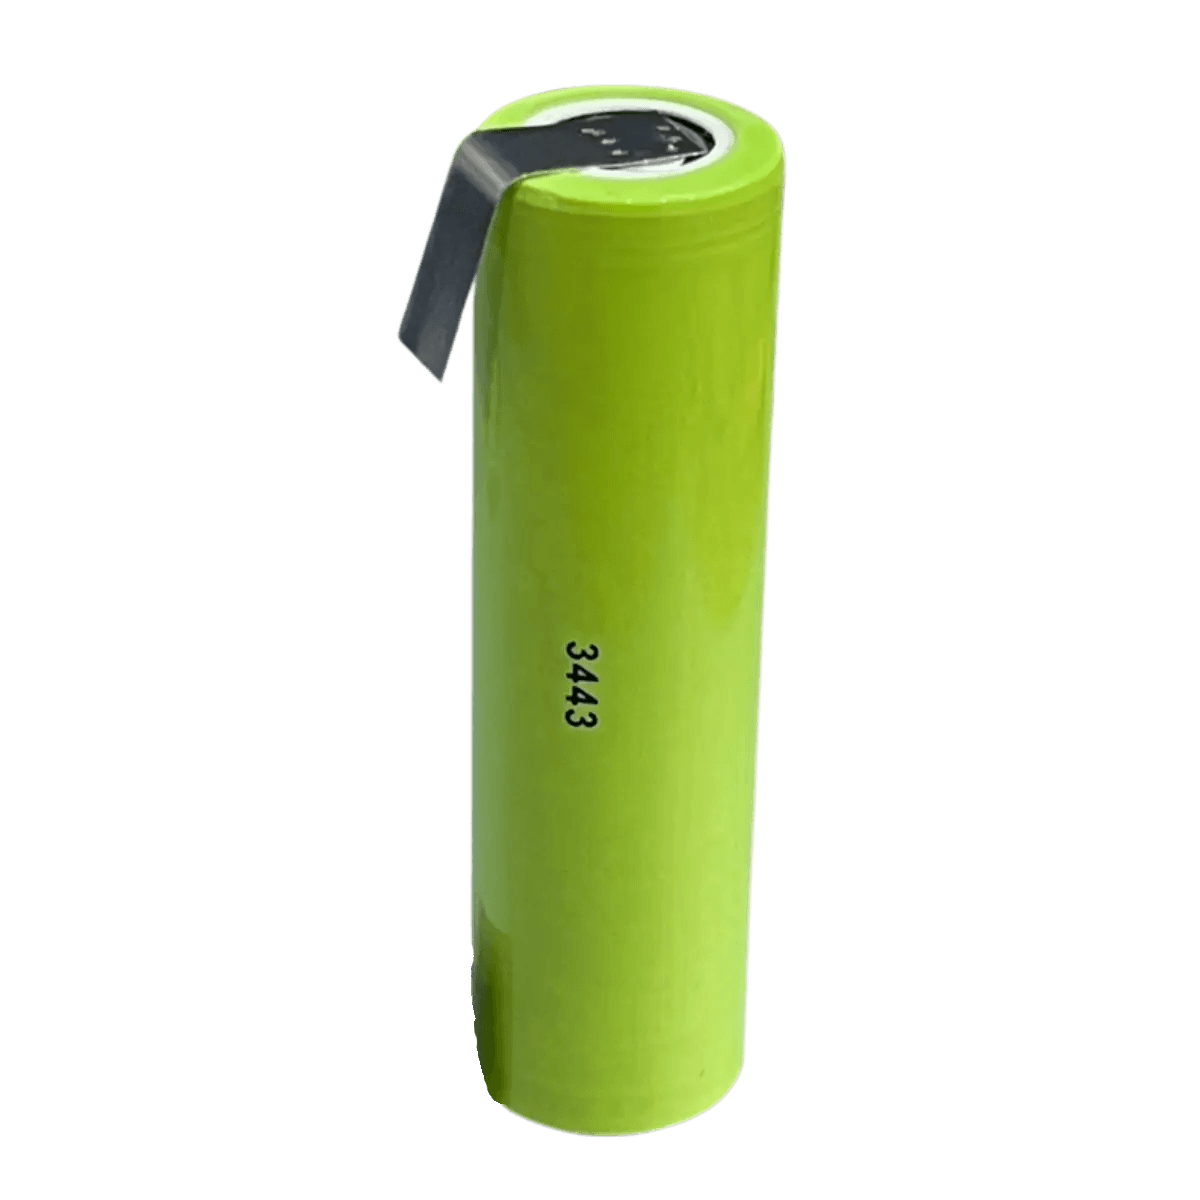 Batterie ICR18650 Li-ion 3.7V 2200mAh avec languettes à souder